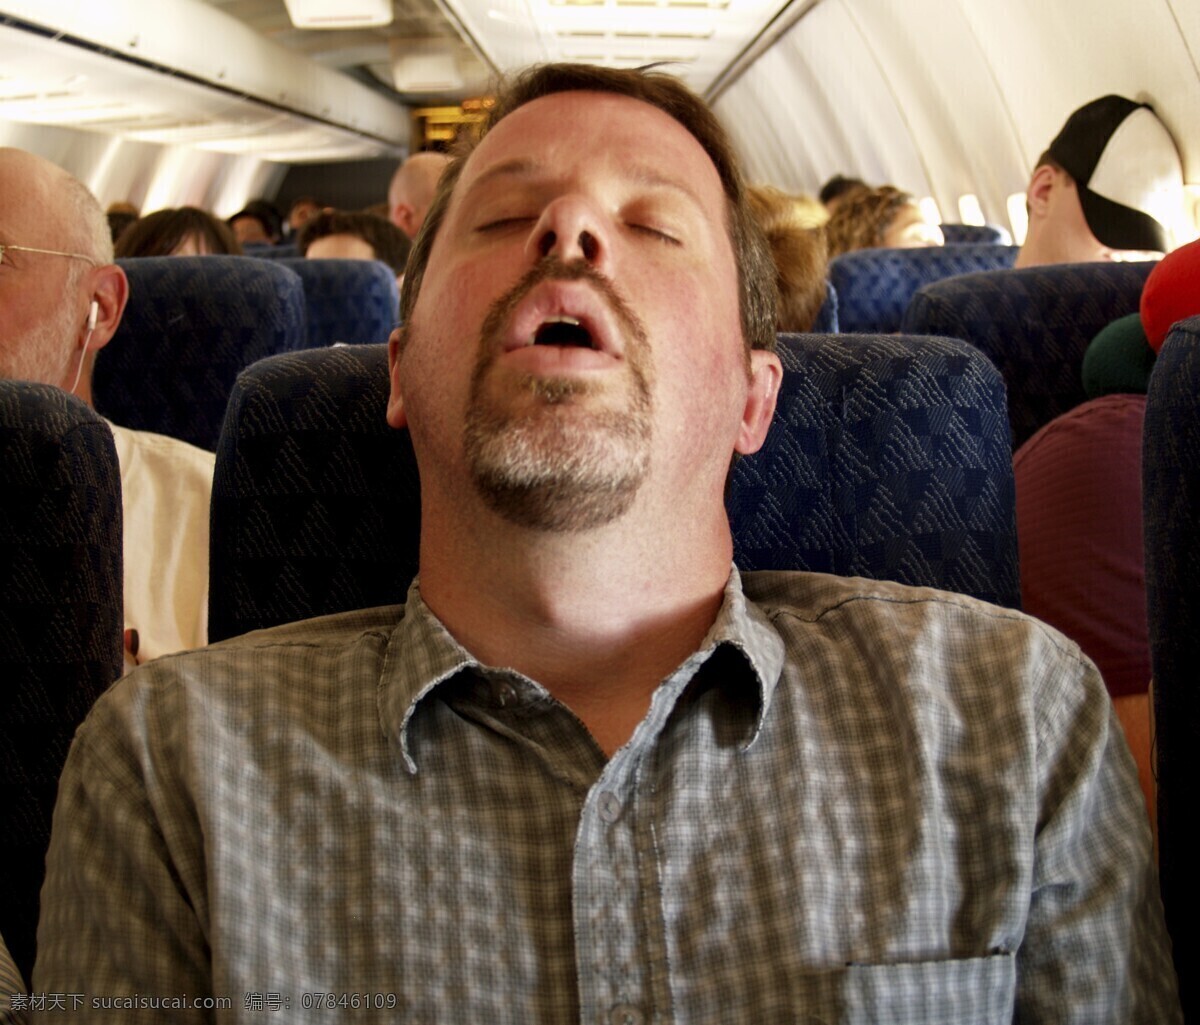 呼呼入睡 睡觉 入睡 打鼾 睡眠 机舱 打盹 乘客 人物图库 男性男人 摄影图库